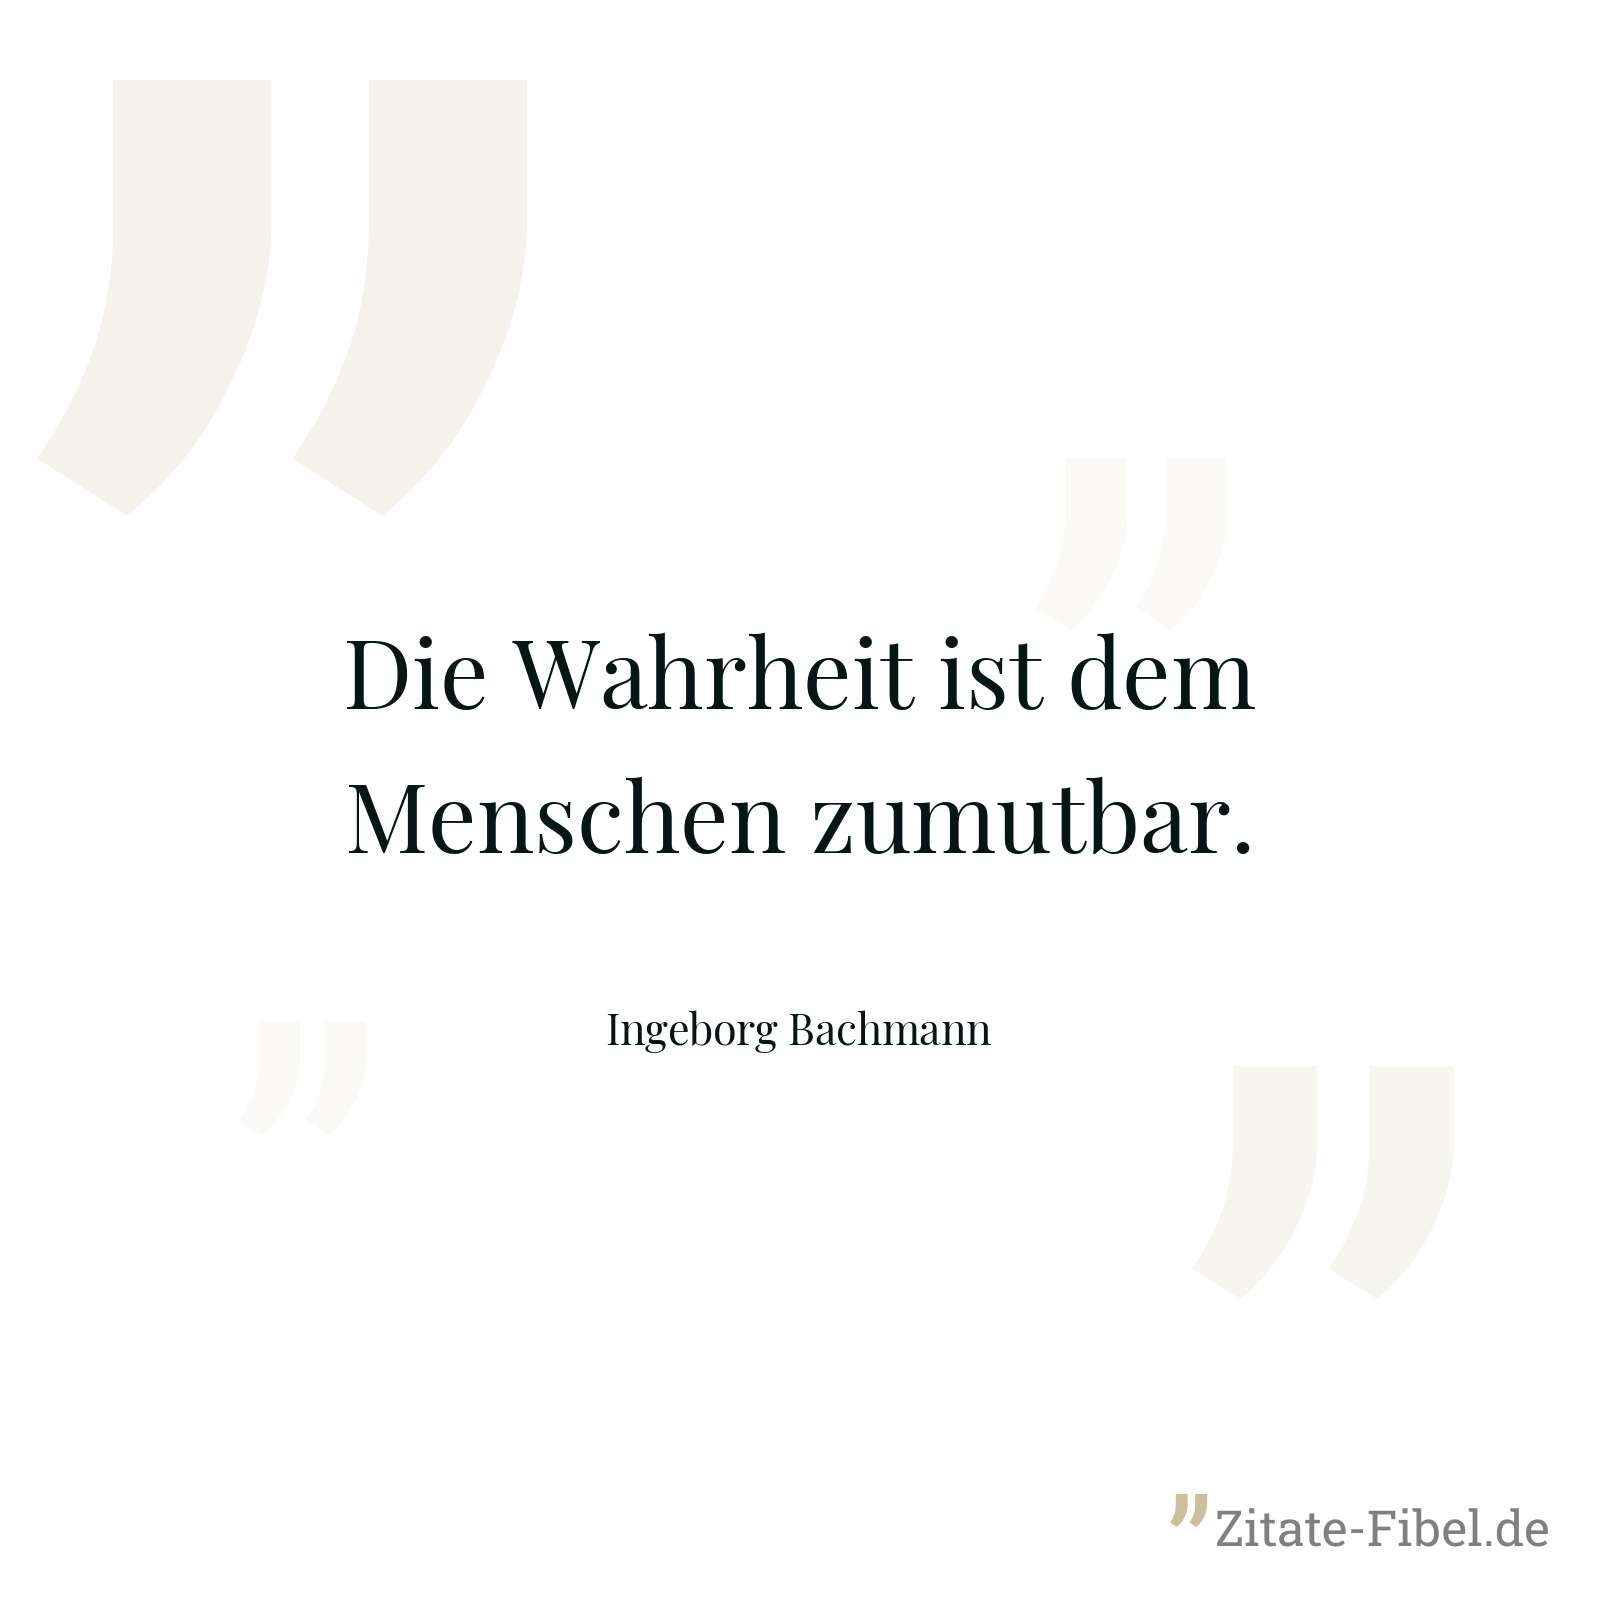 Die Wahrheit ist dem Menschen zumutbar. - Ingeborg Bachmann